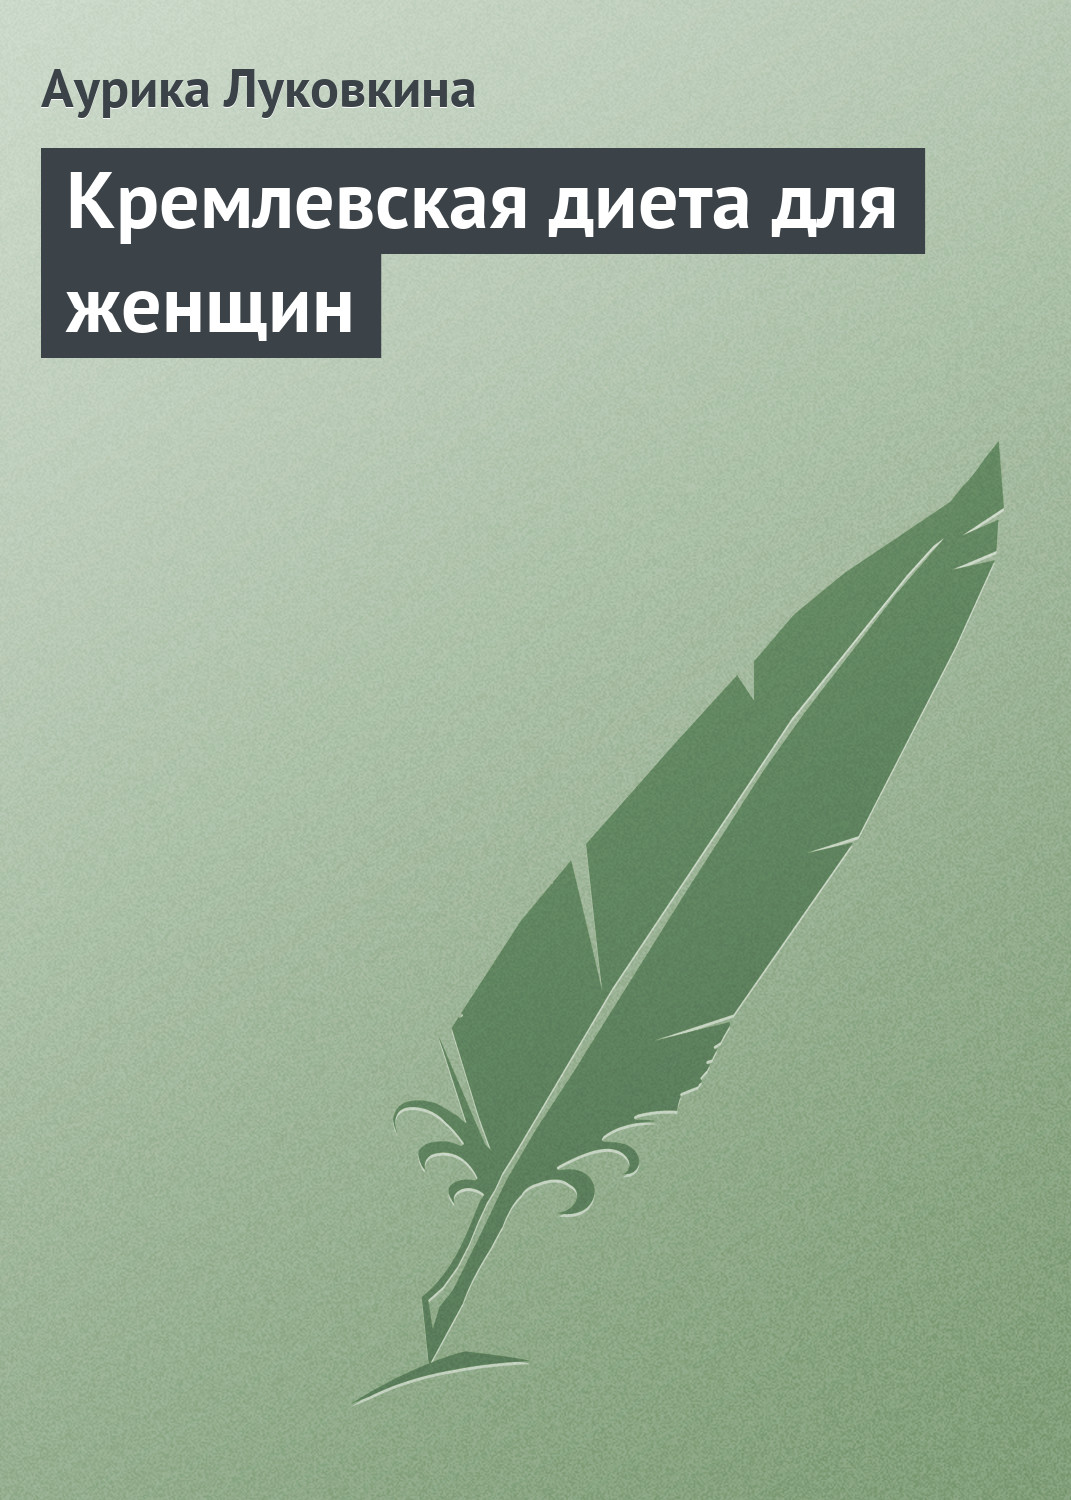 Книга Кремлевская диета для женщин из серии , созданная Аурика Луковкина, может относится к жанру Кулинария, Здоровье. Стоимость электронной книги Кремлевская диета для женщин с идентификатором 8919232 составляет 39.90 руб.